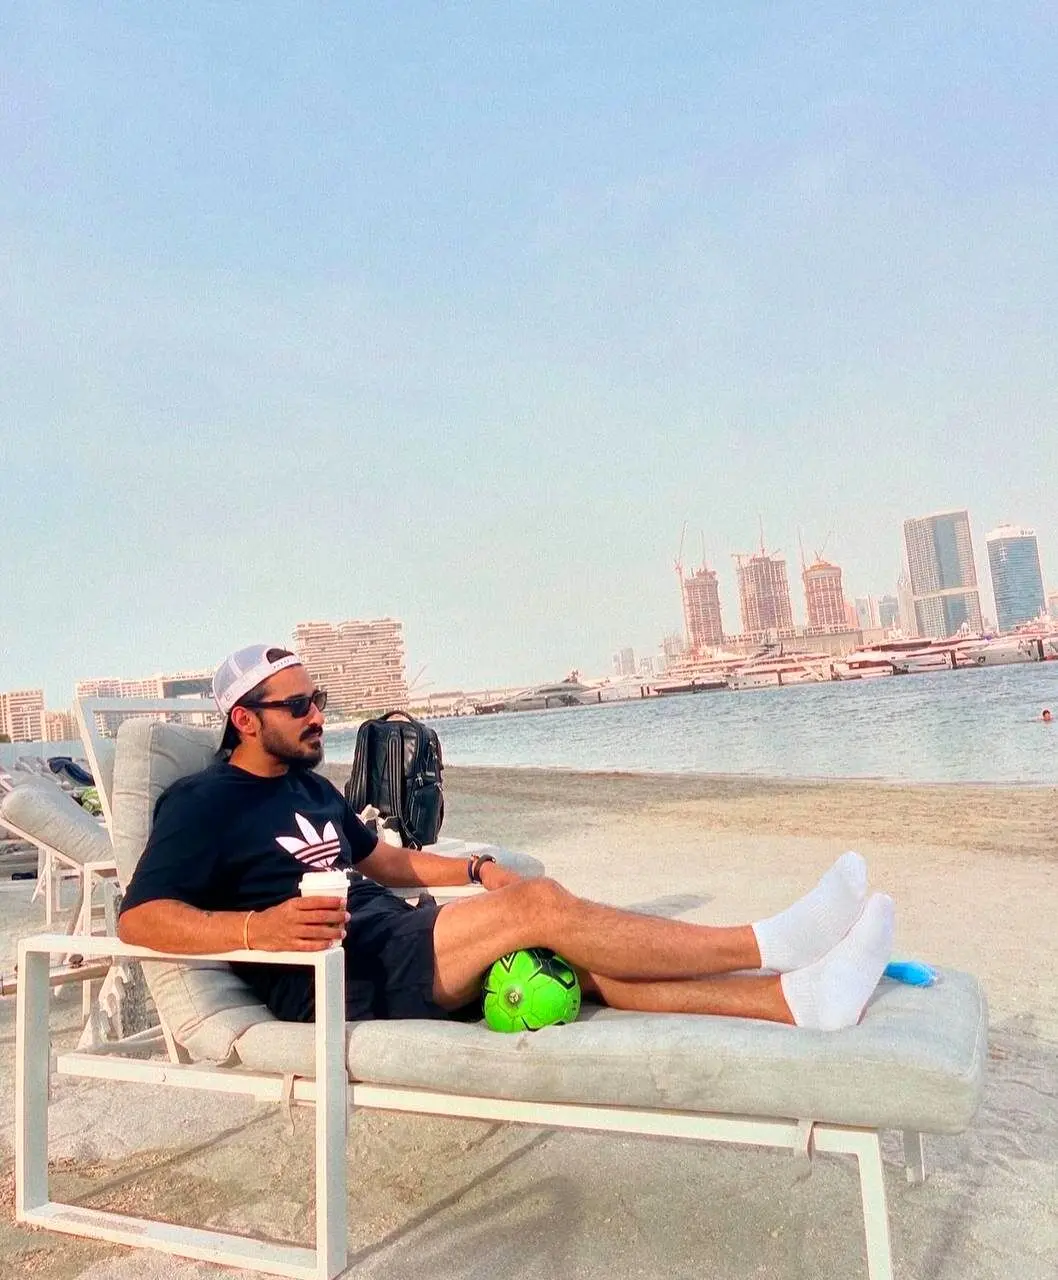 آفتاب گرفتن رضا گوچی در ساحل امارات/ عکس